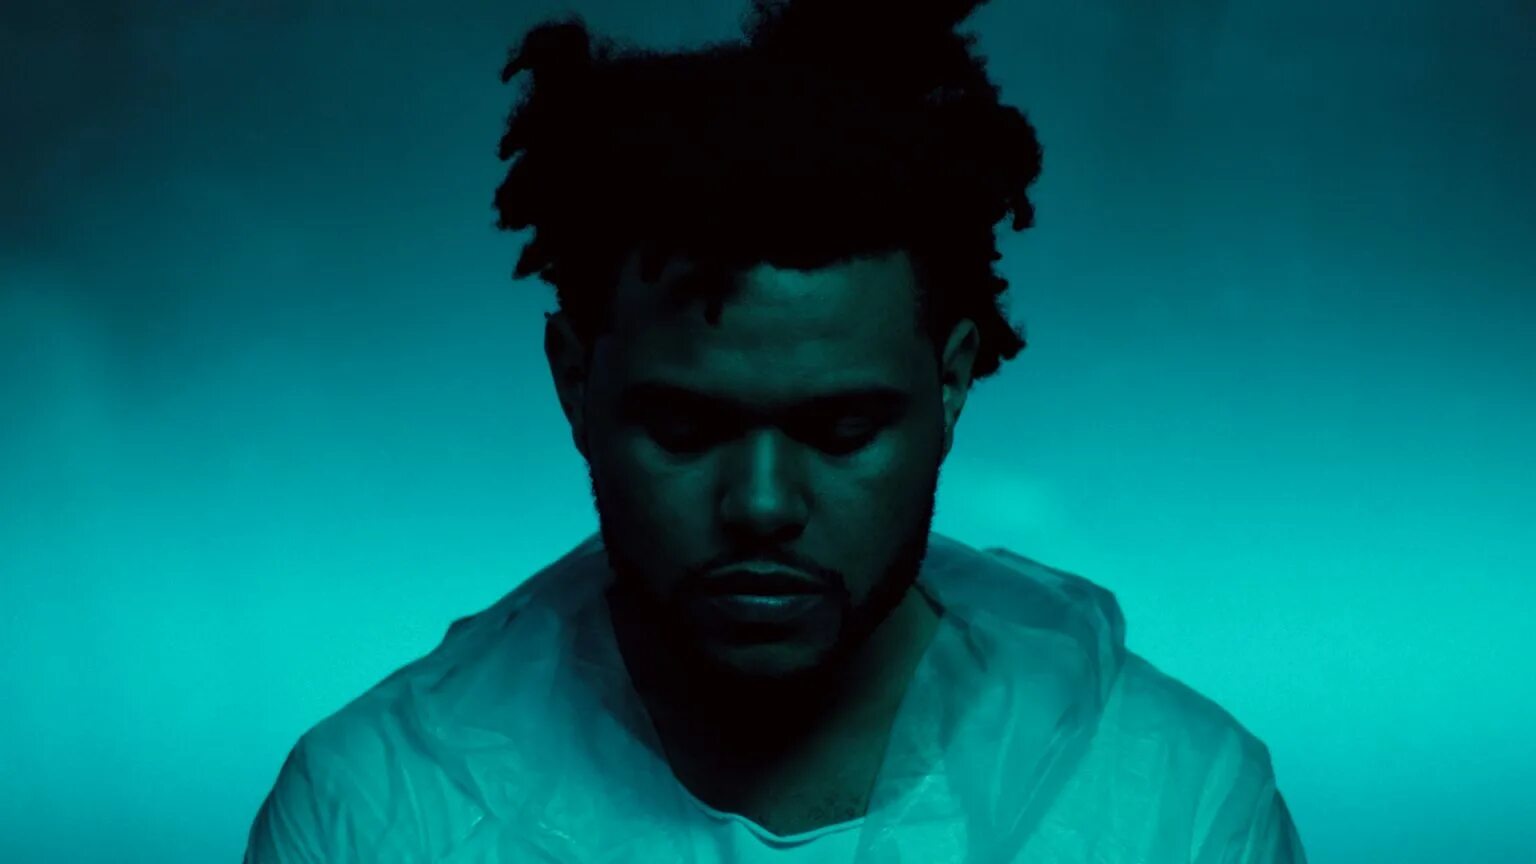 The Weeknd. Weekend. The Weeknd 2015. The Weeknd Drake. To belong to something